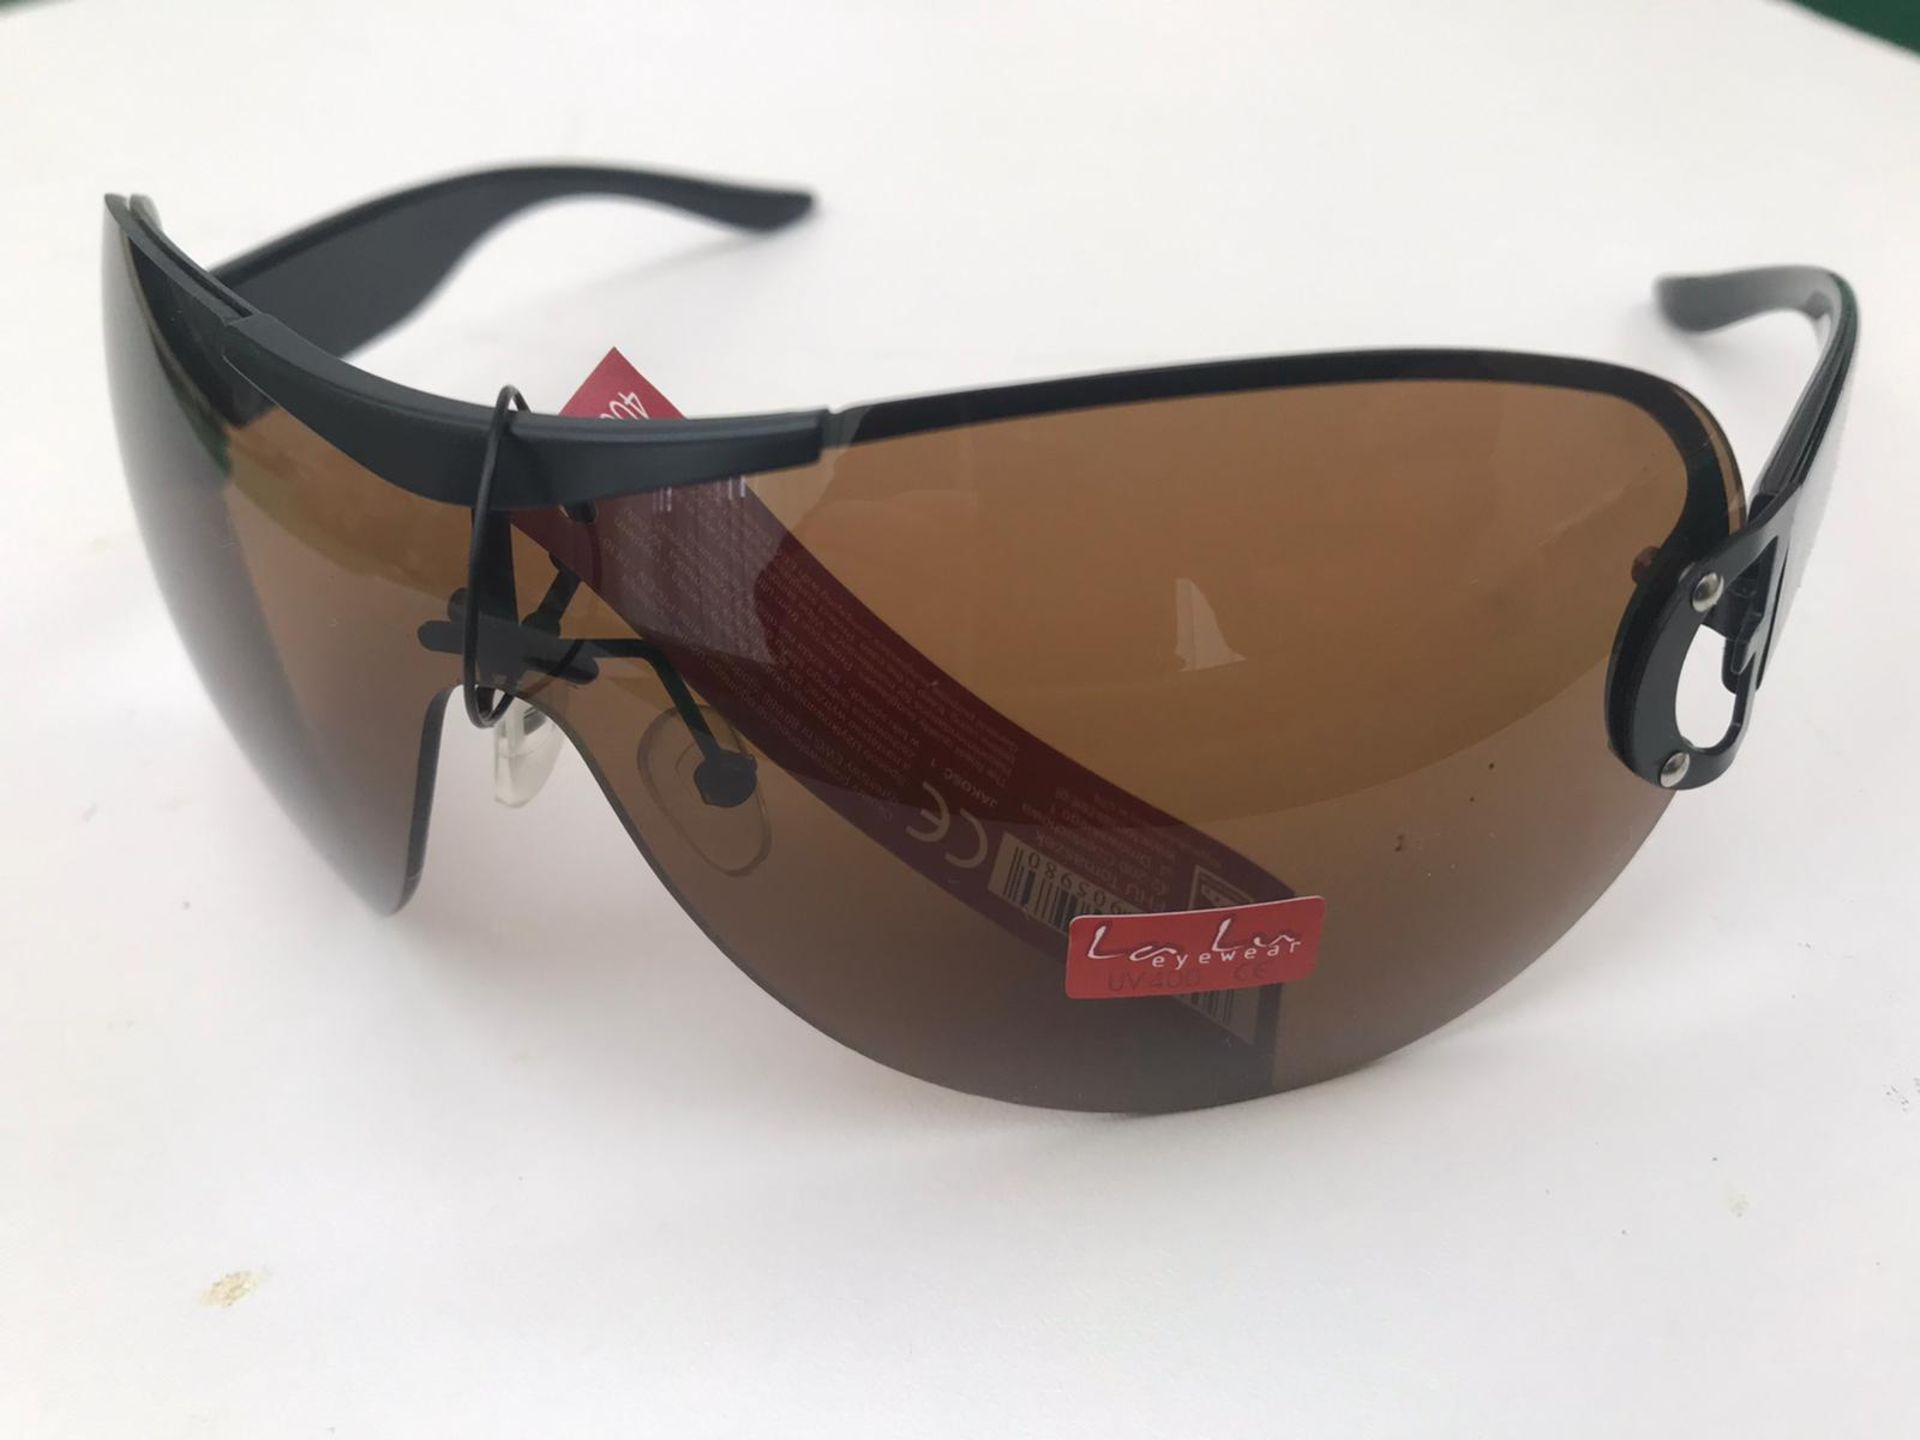 500x La Lu Branded Sunglasses | Various Styles | Unopened & Unused - Image 8 of 33